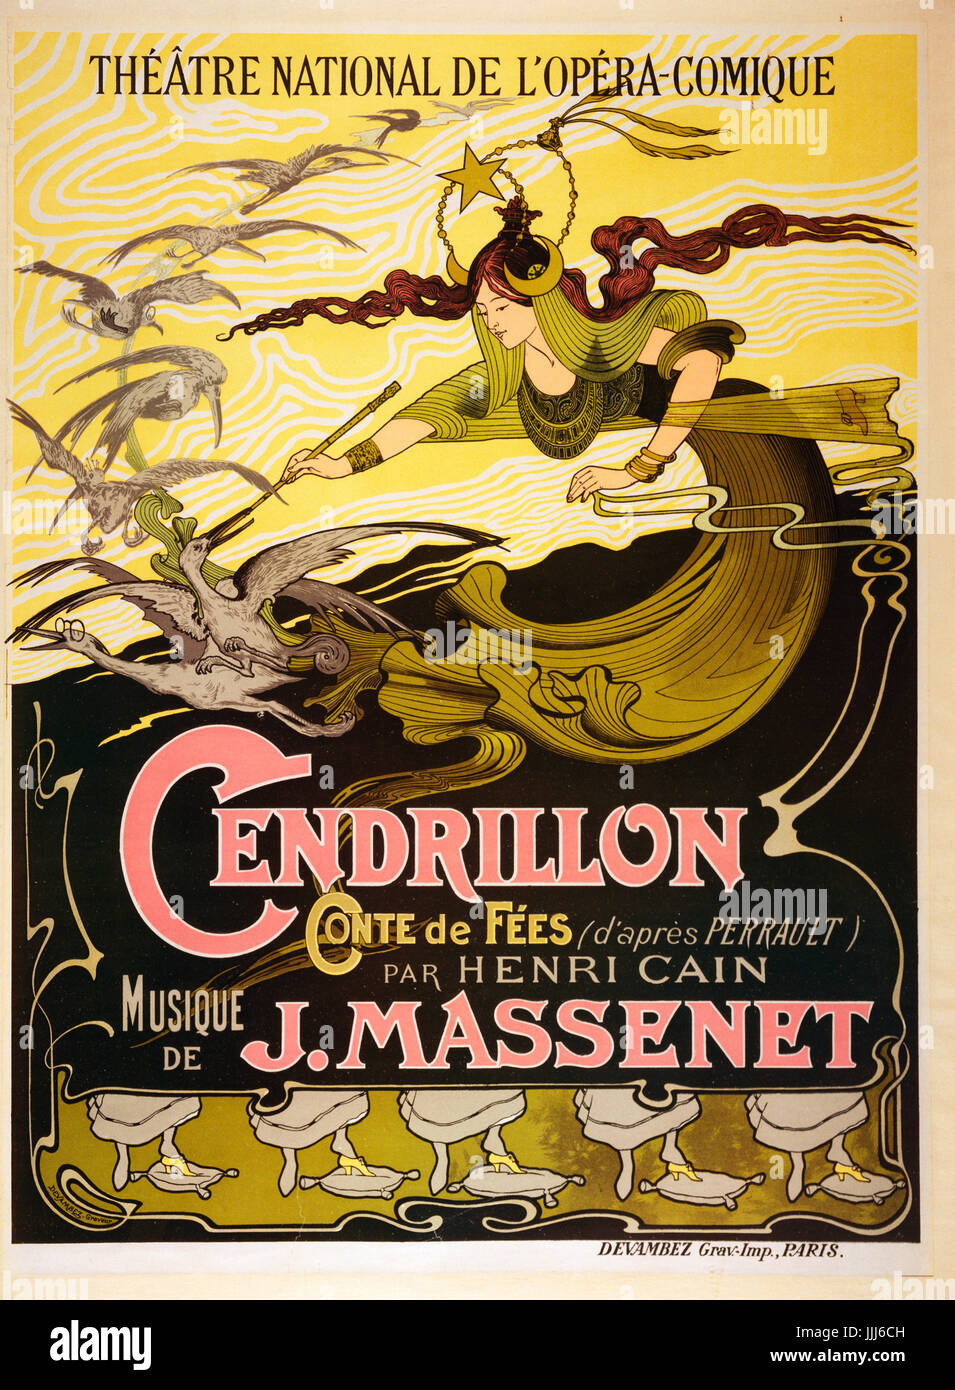 Cendrillon (Cinderella), 1899 fiaba opera di Jules Massenet (12 maggio 1842 - 13 agosto 1912). Poster per prestazioni presso il Théâtre National de l'Opéra-Comique ideato da Emil Bertrand (1816 - 1888). Foto Stock